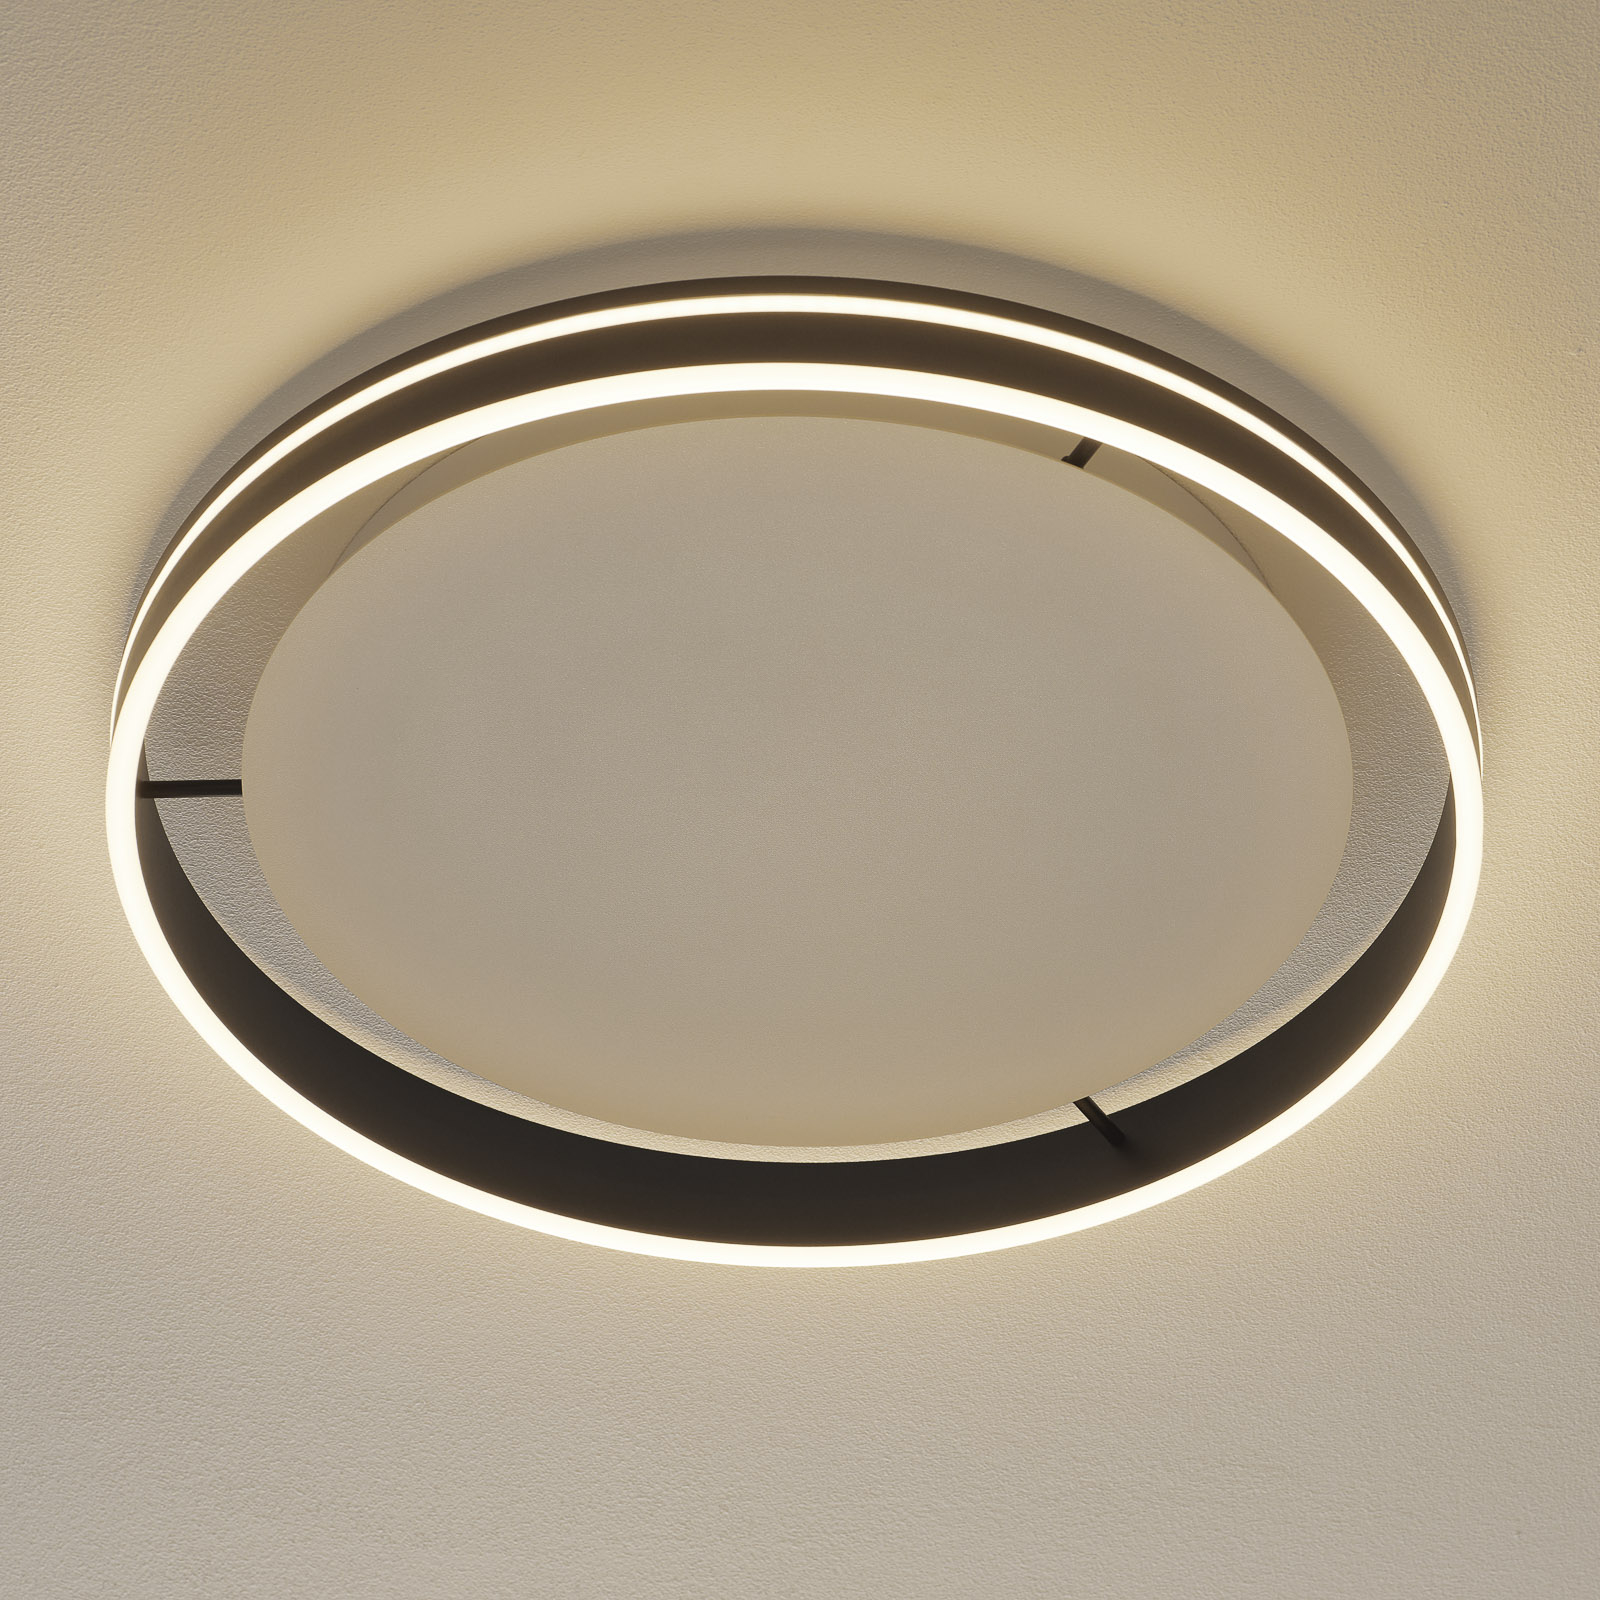 Paul Neuhaus Q-VITO LED-Deckenlampe 59cm anthrazit